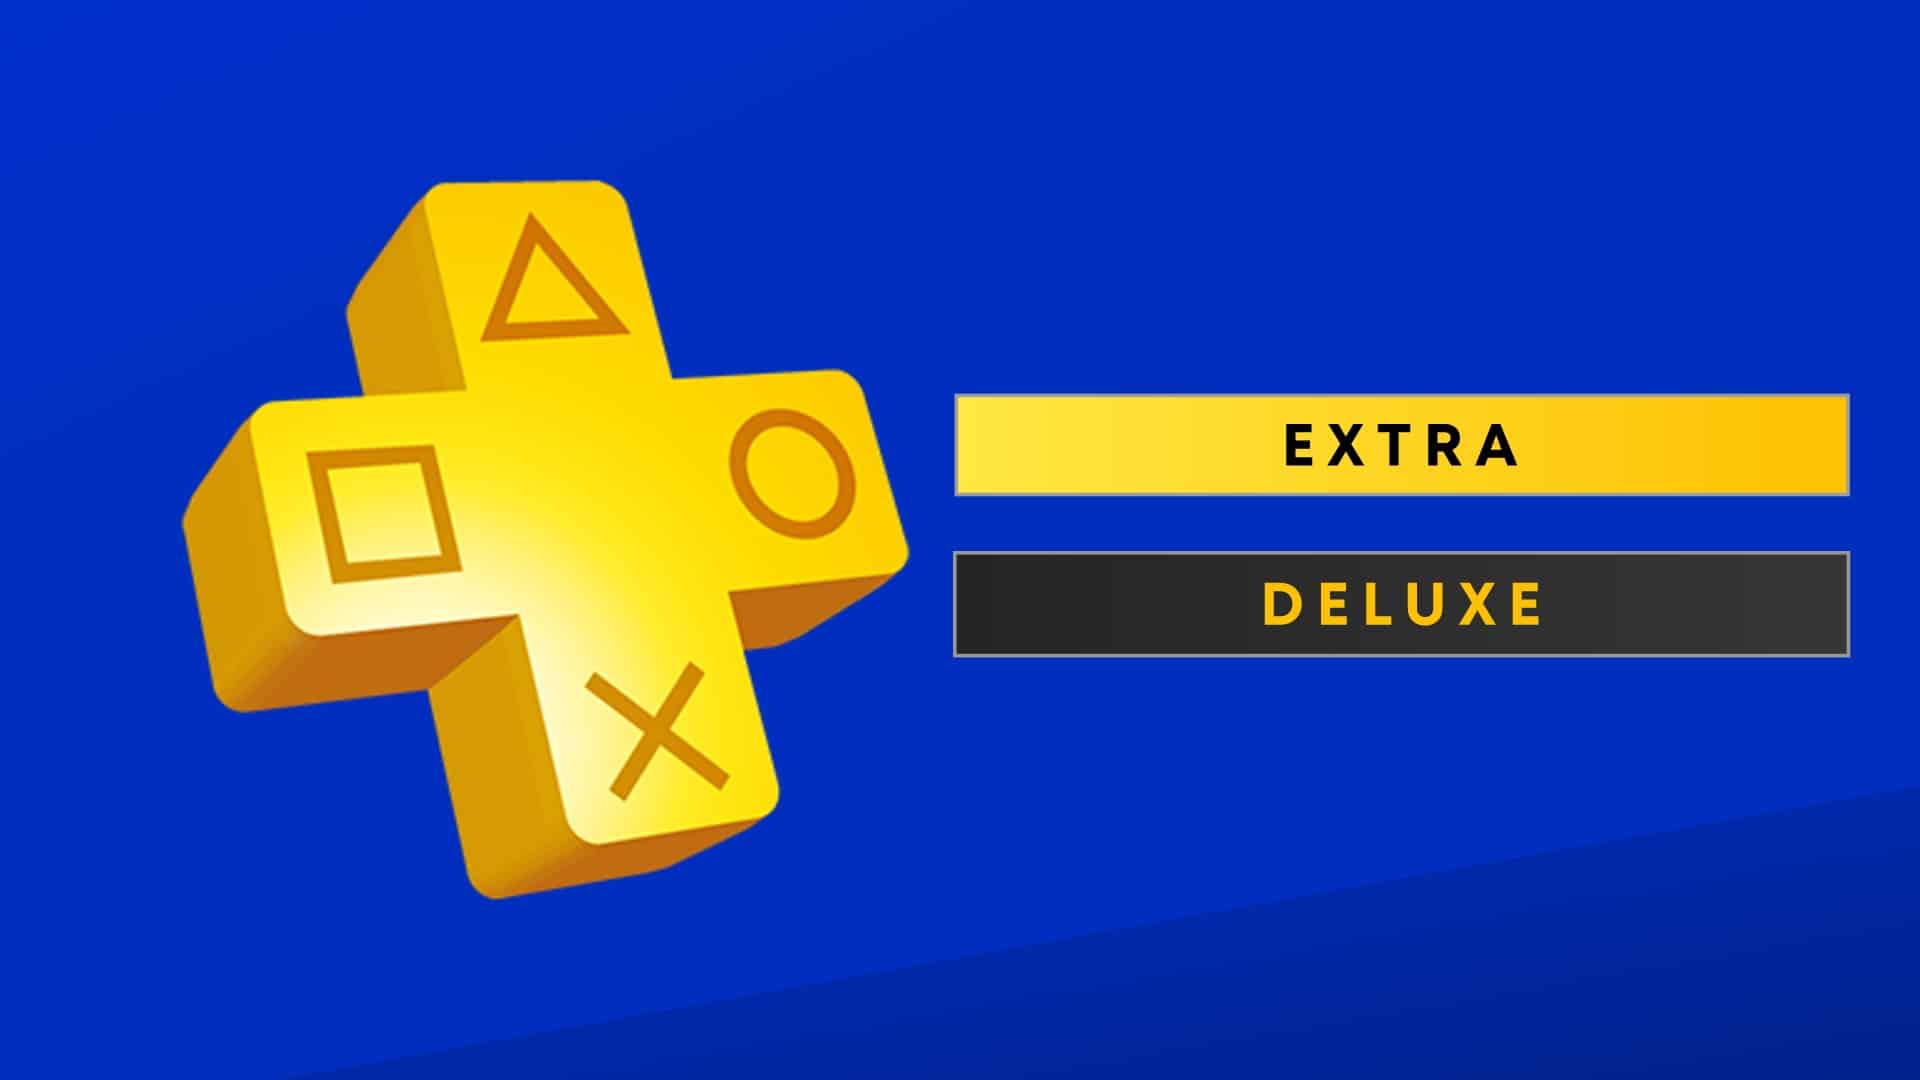 Saiba quais são os jogos do Playstation Plus Extra e Deluxe para dezembro  de 2022 - Universo Playstation